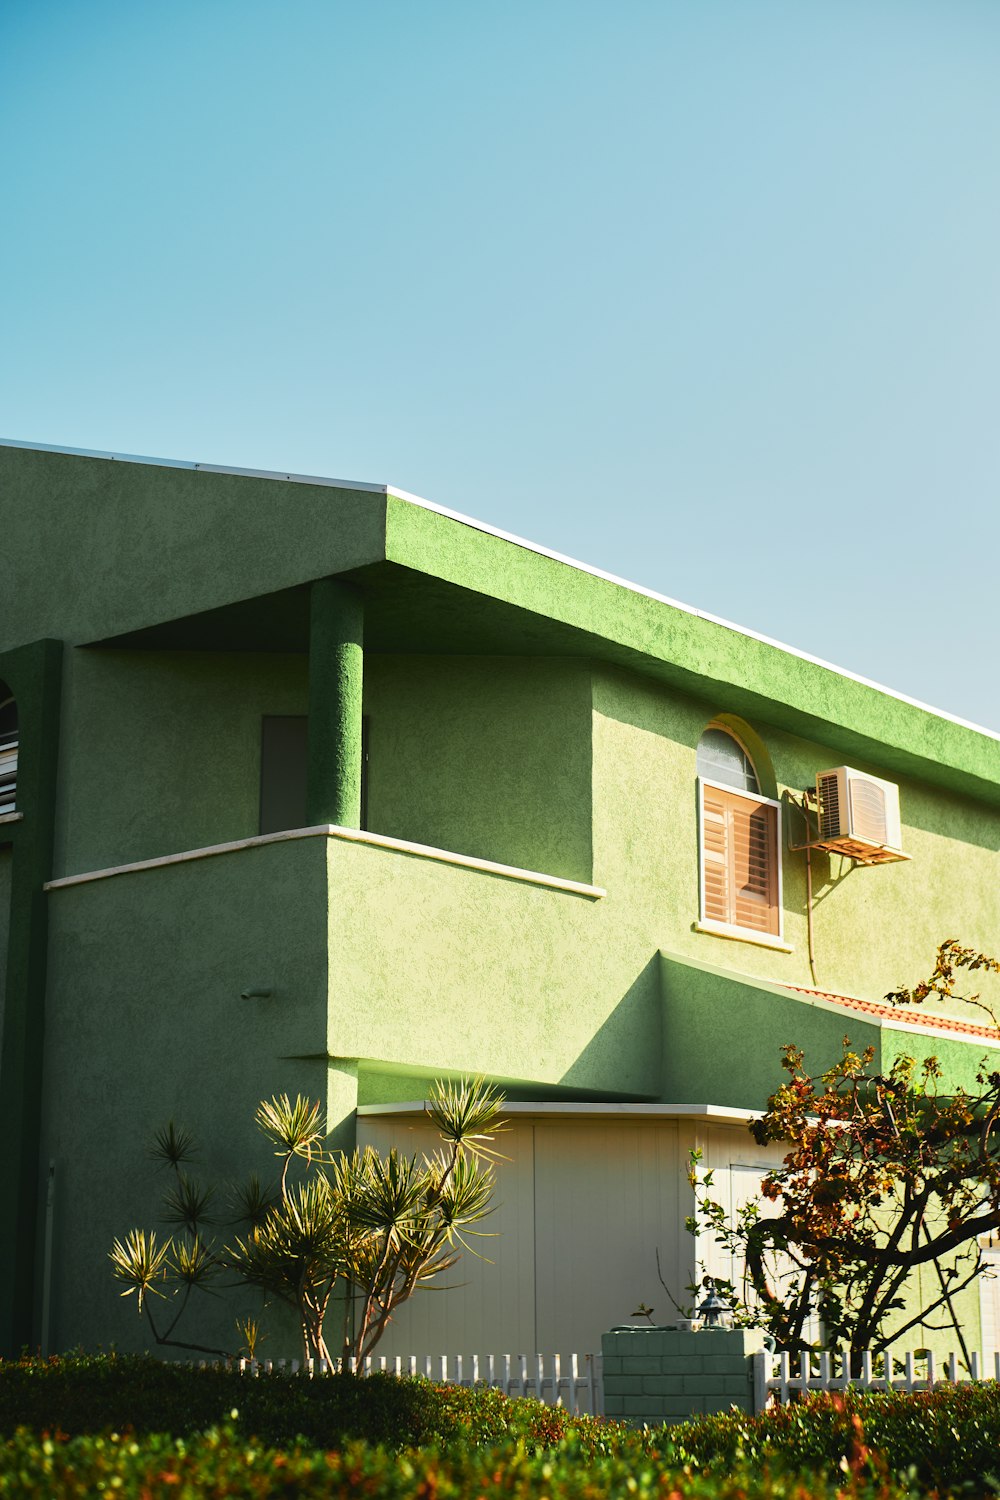 녹색과 흰색 콘크리트 건물